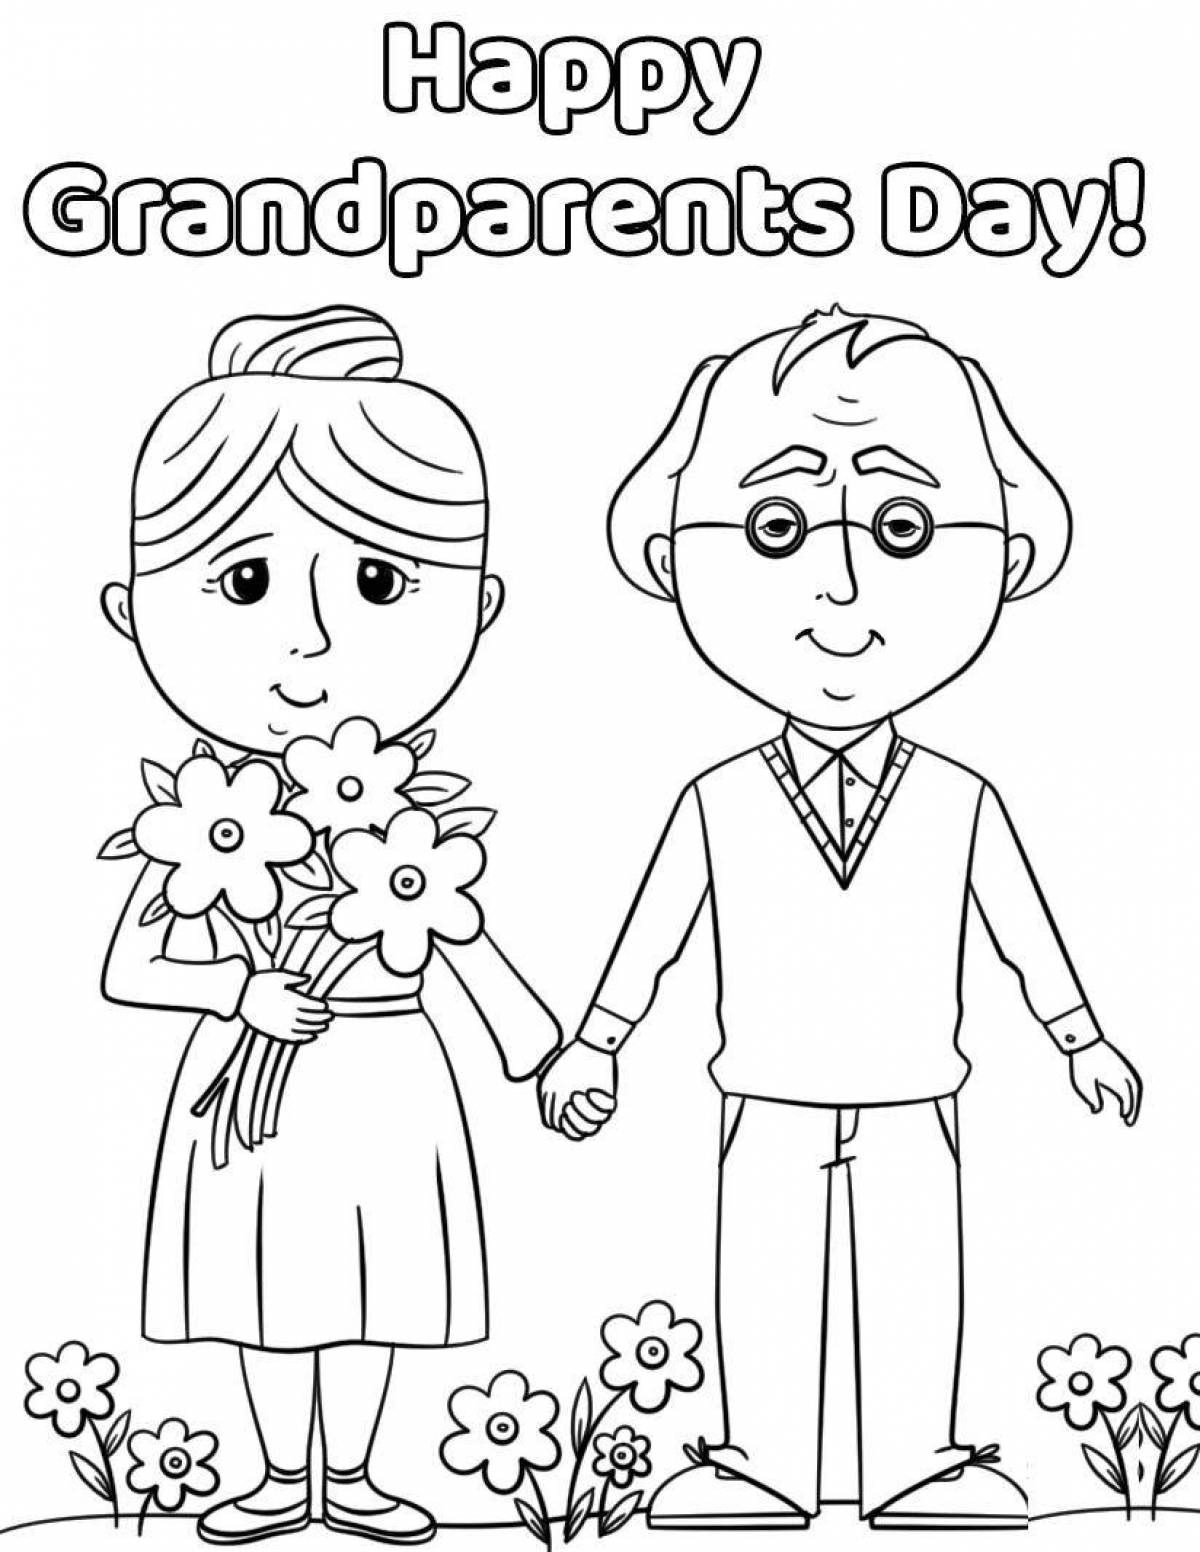 Рисунок на годовщину бабушке и дедушке